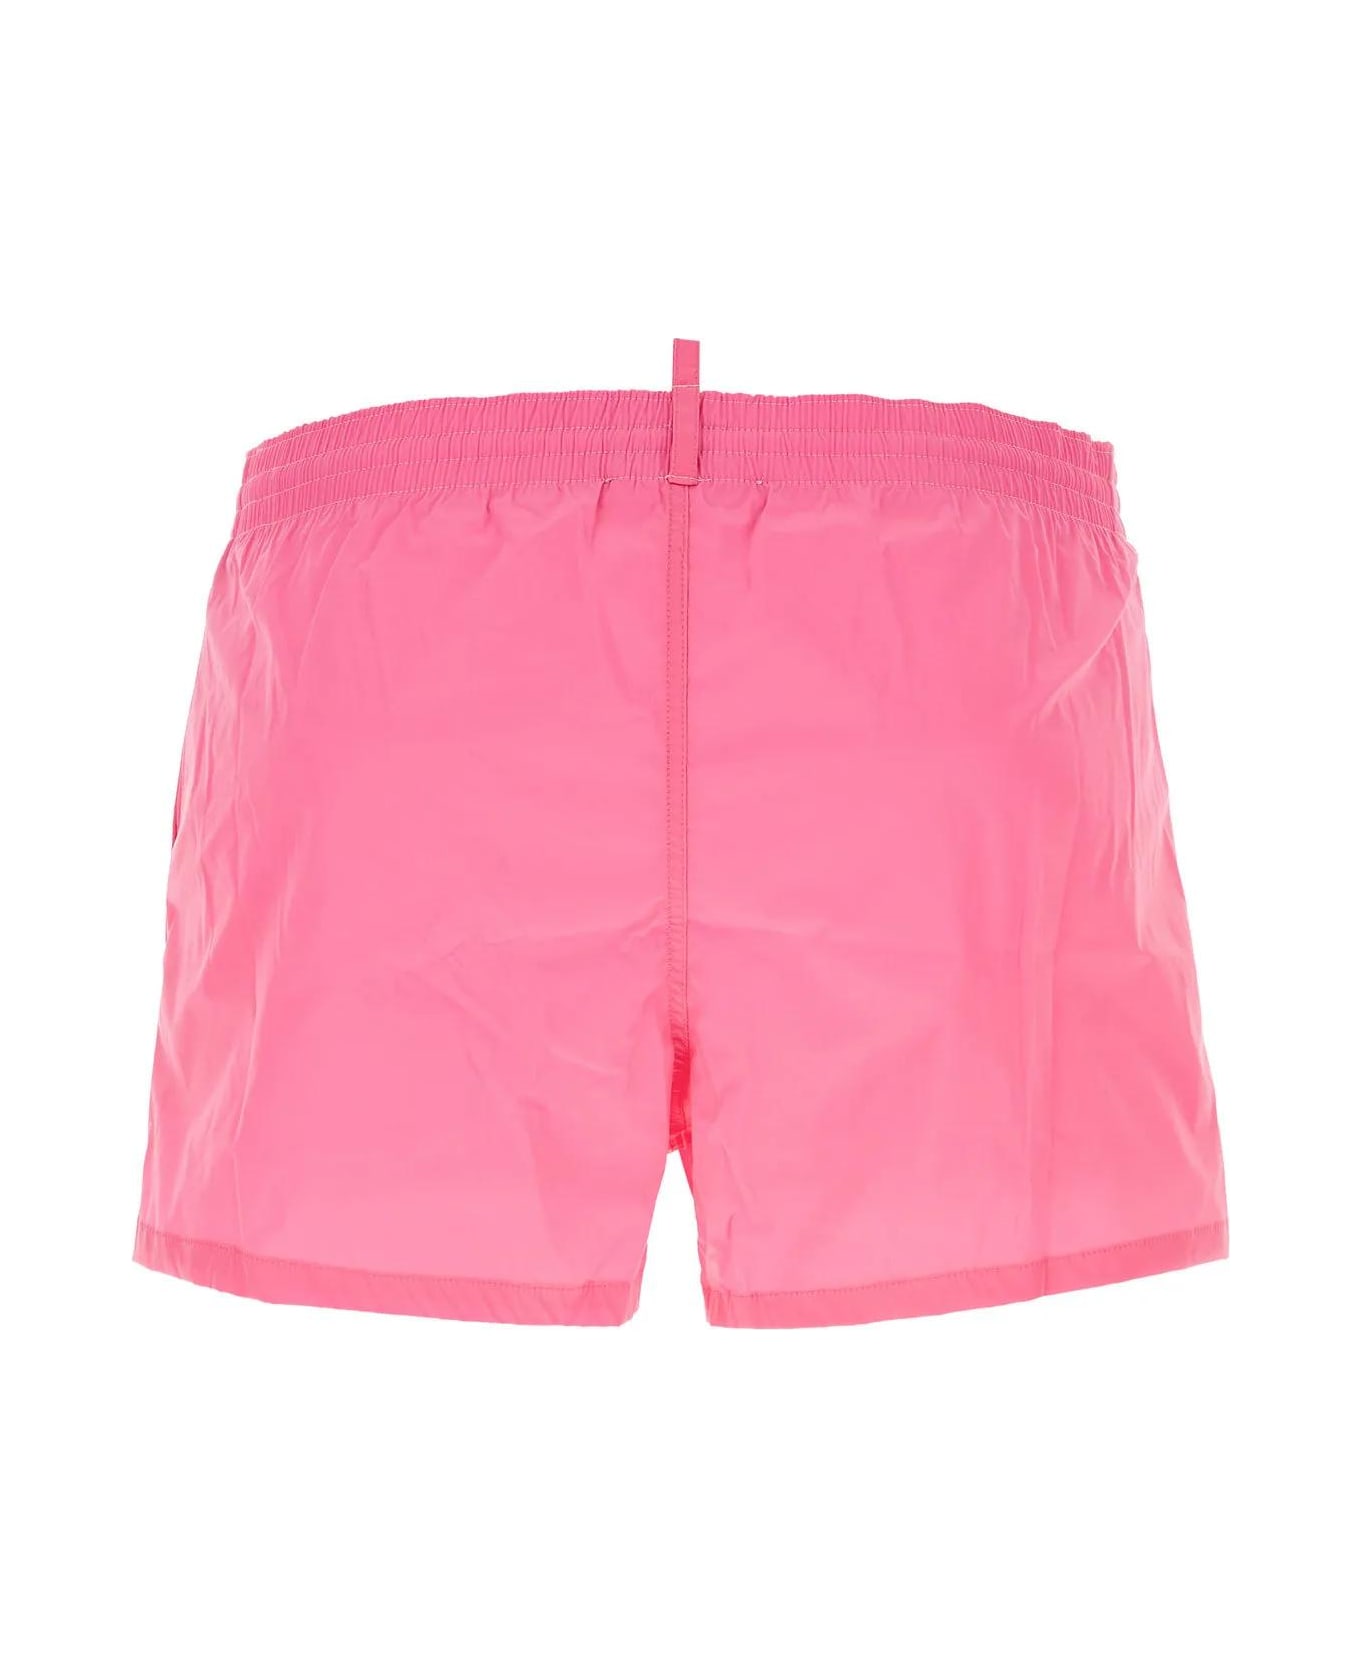 Dsquared2 Fuchsia Stretch Nylon Swimming Shorts - Rosa